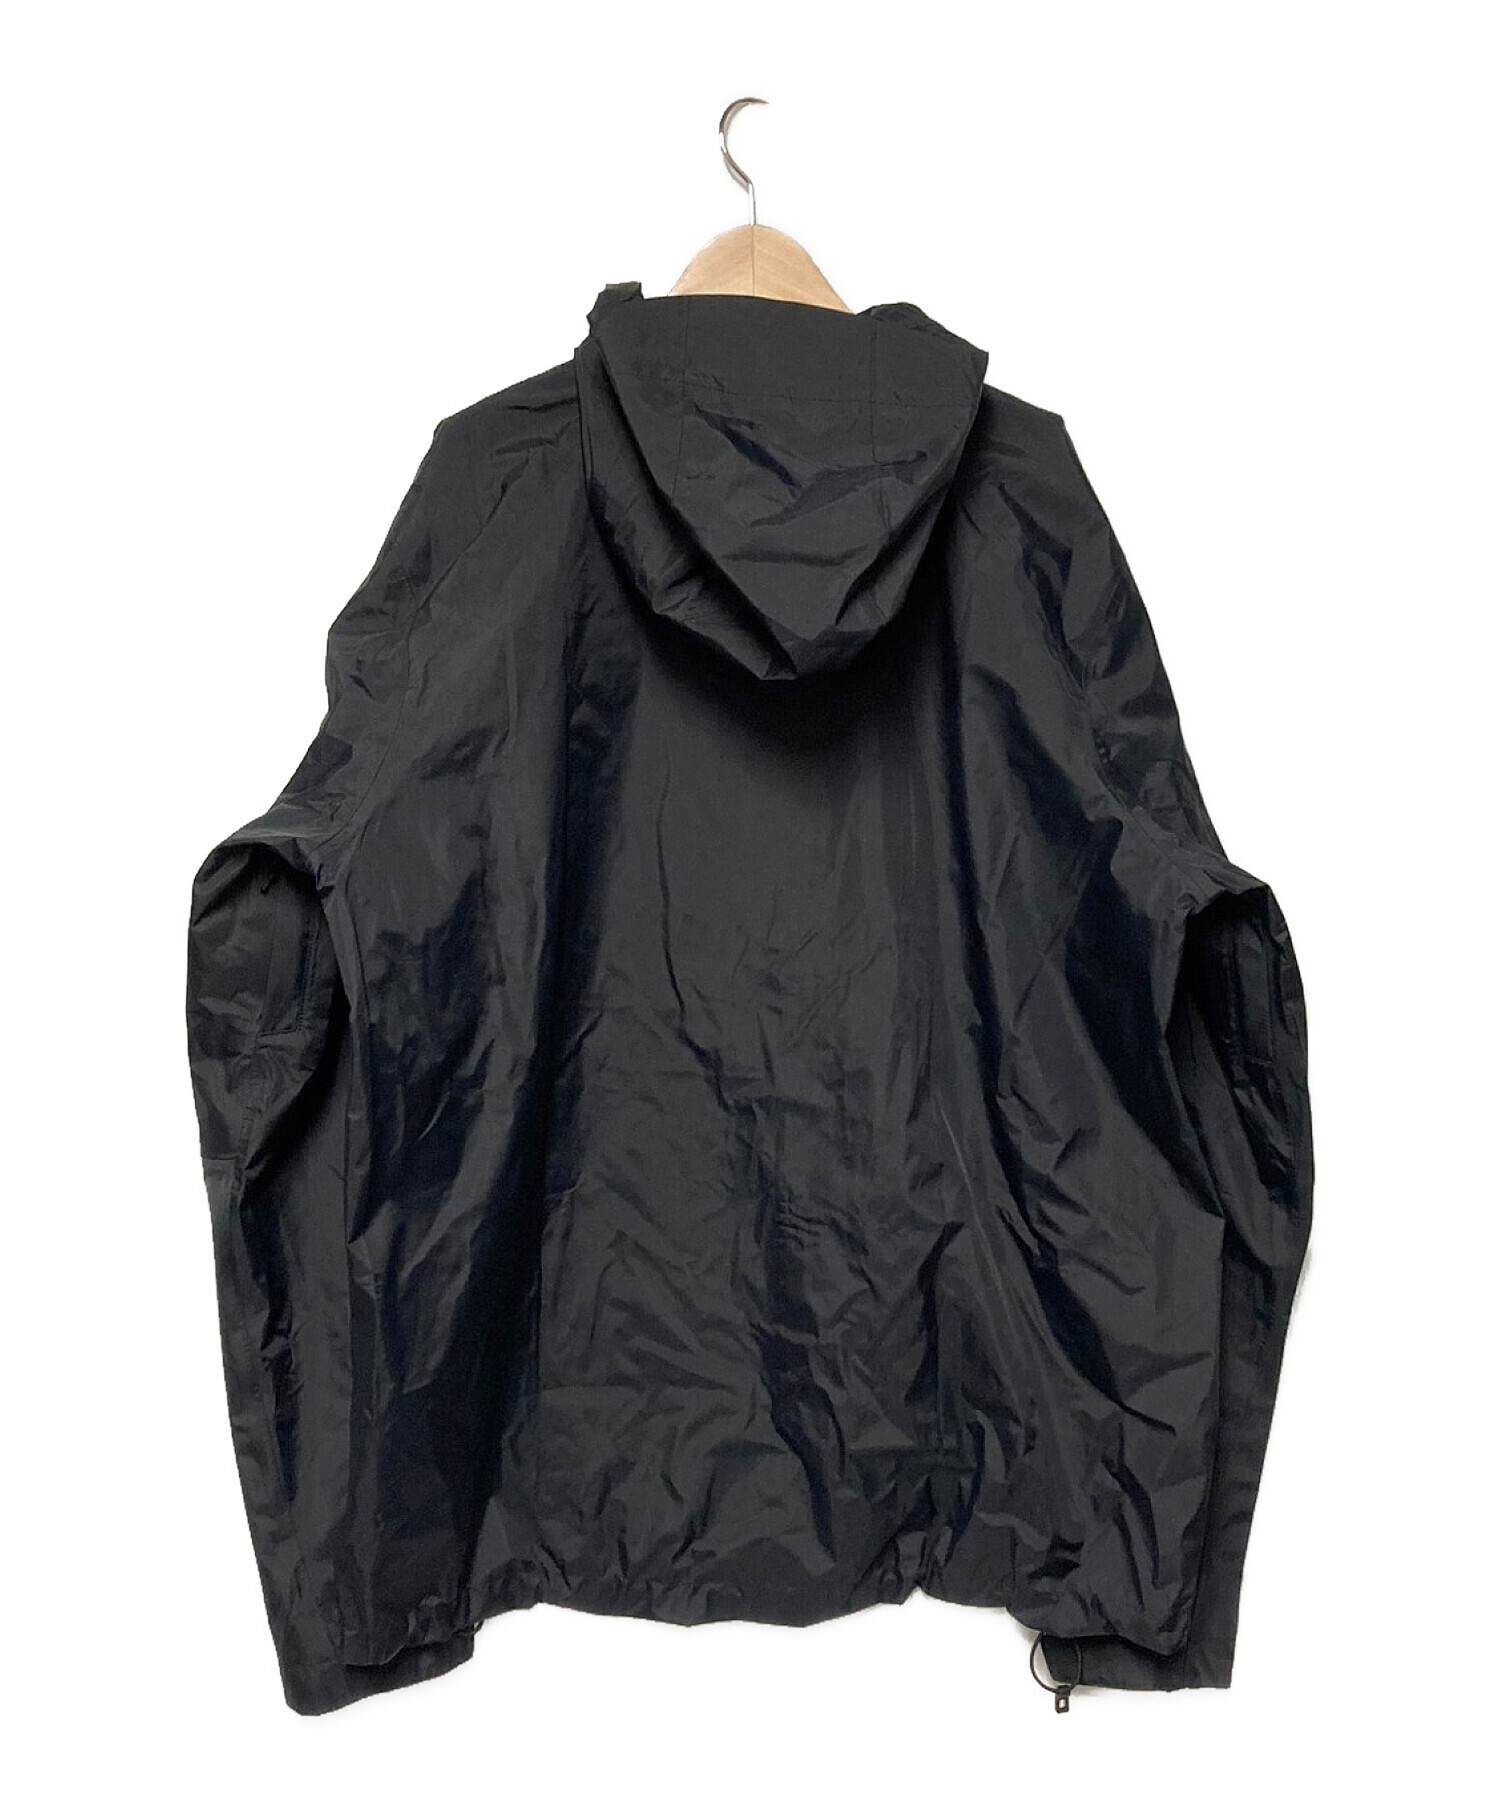 Patagonia (パタゴニア) トレントシェル3Lレインジャケット ブラック サイズ:L 未使用品